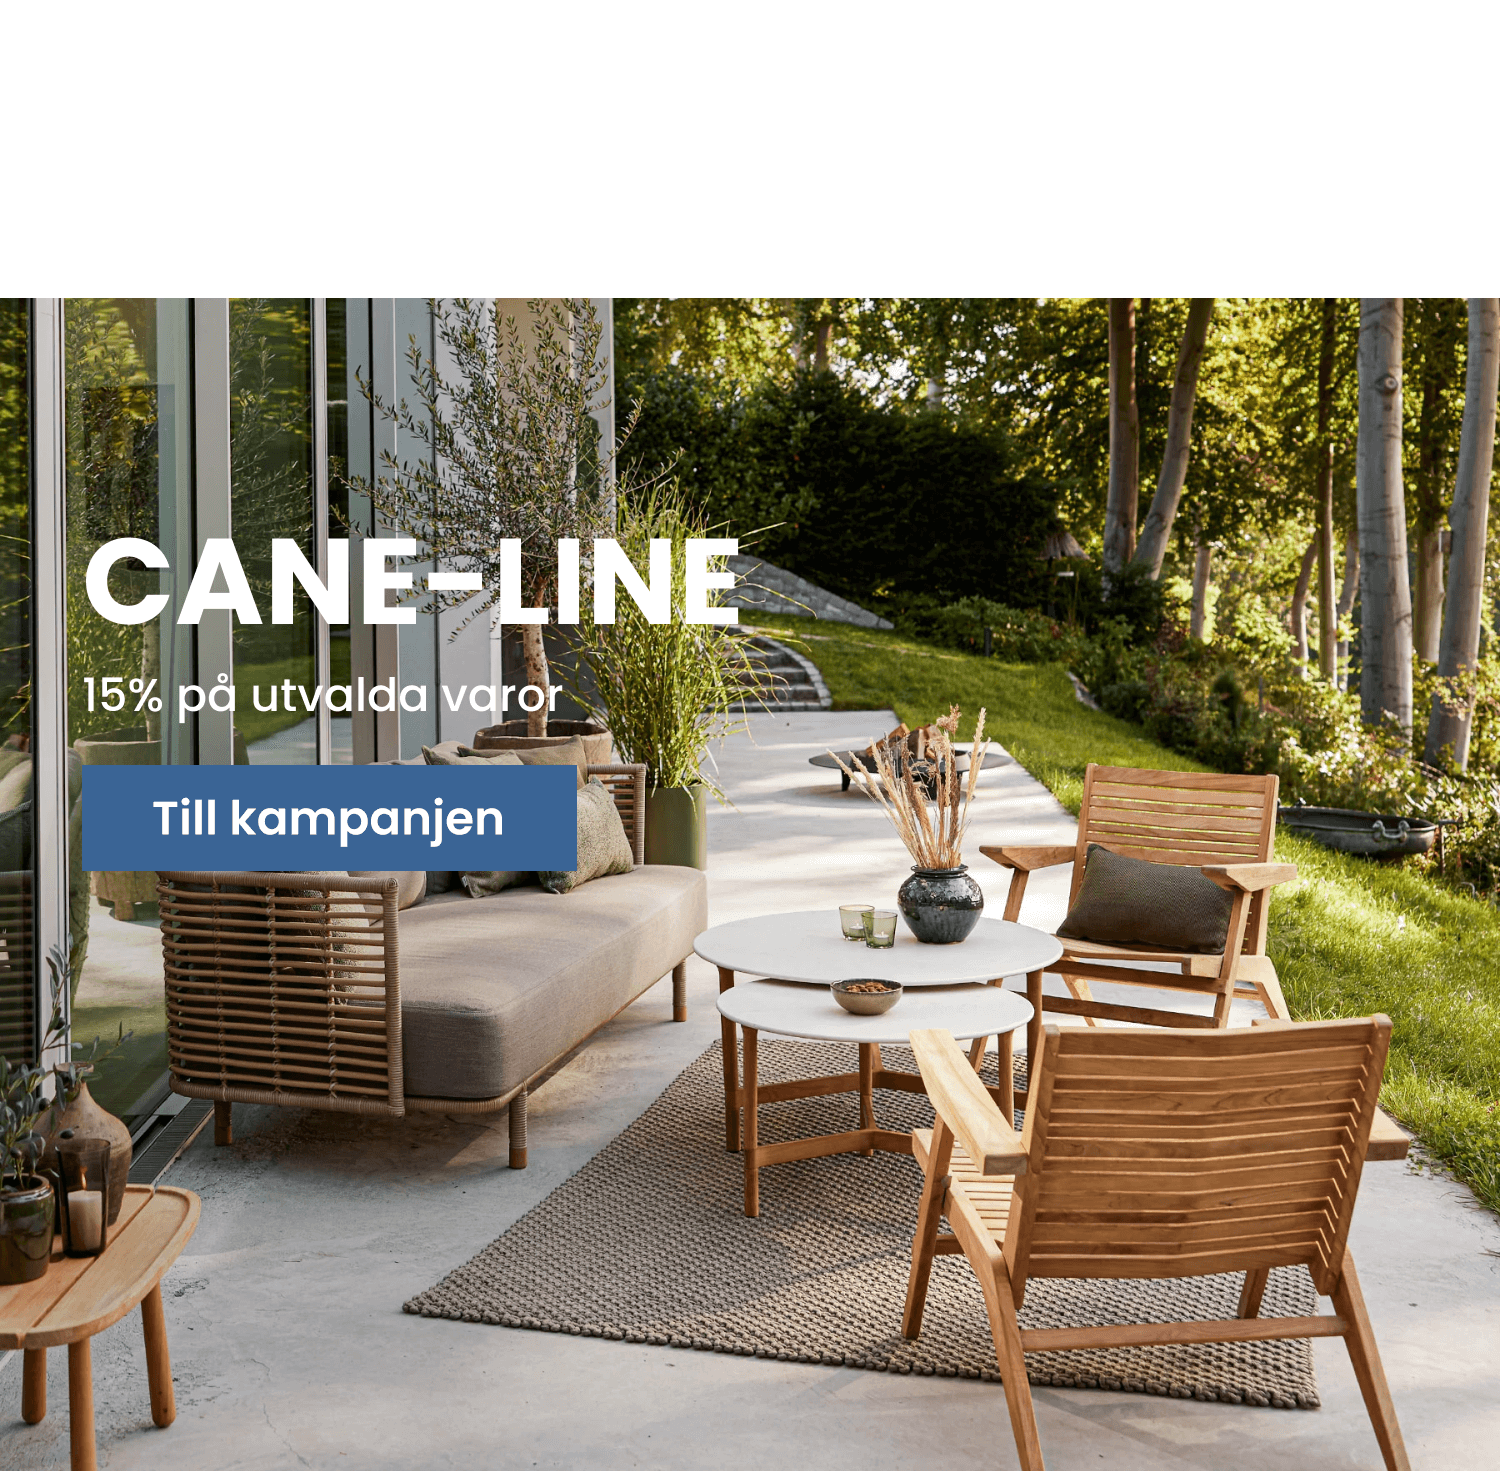 Cane-line 15%